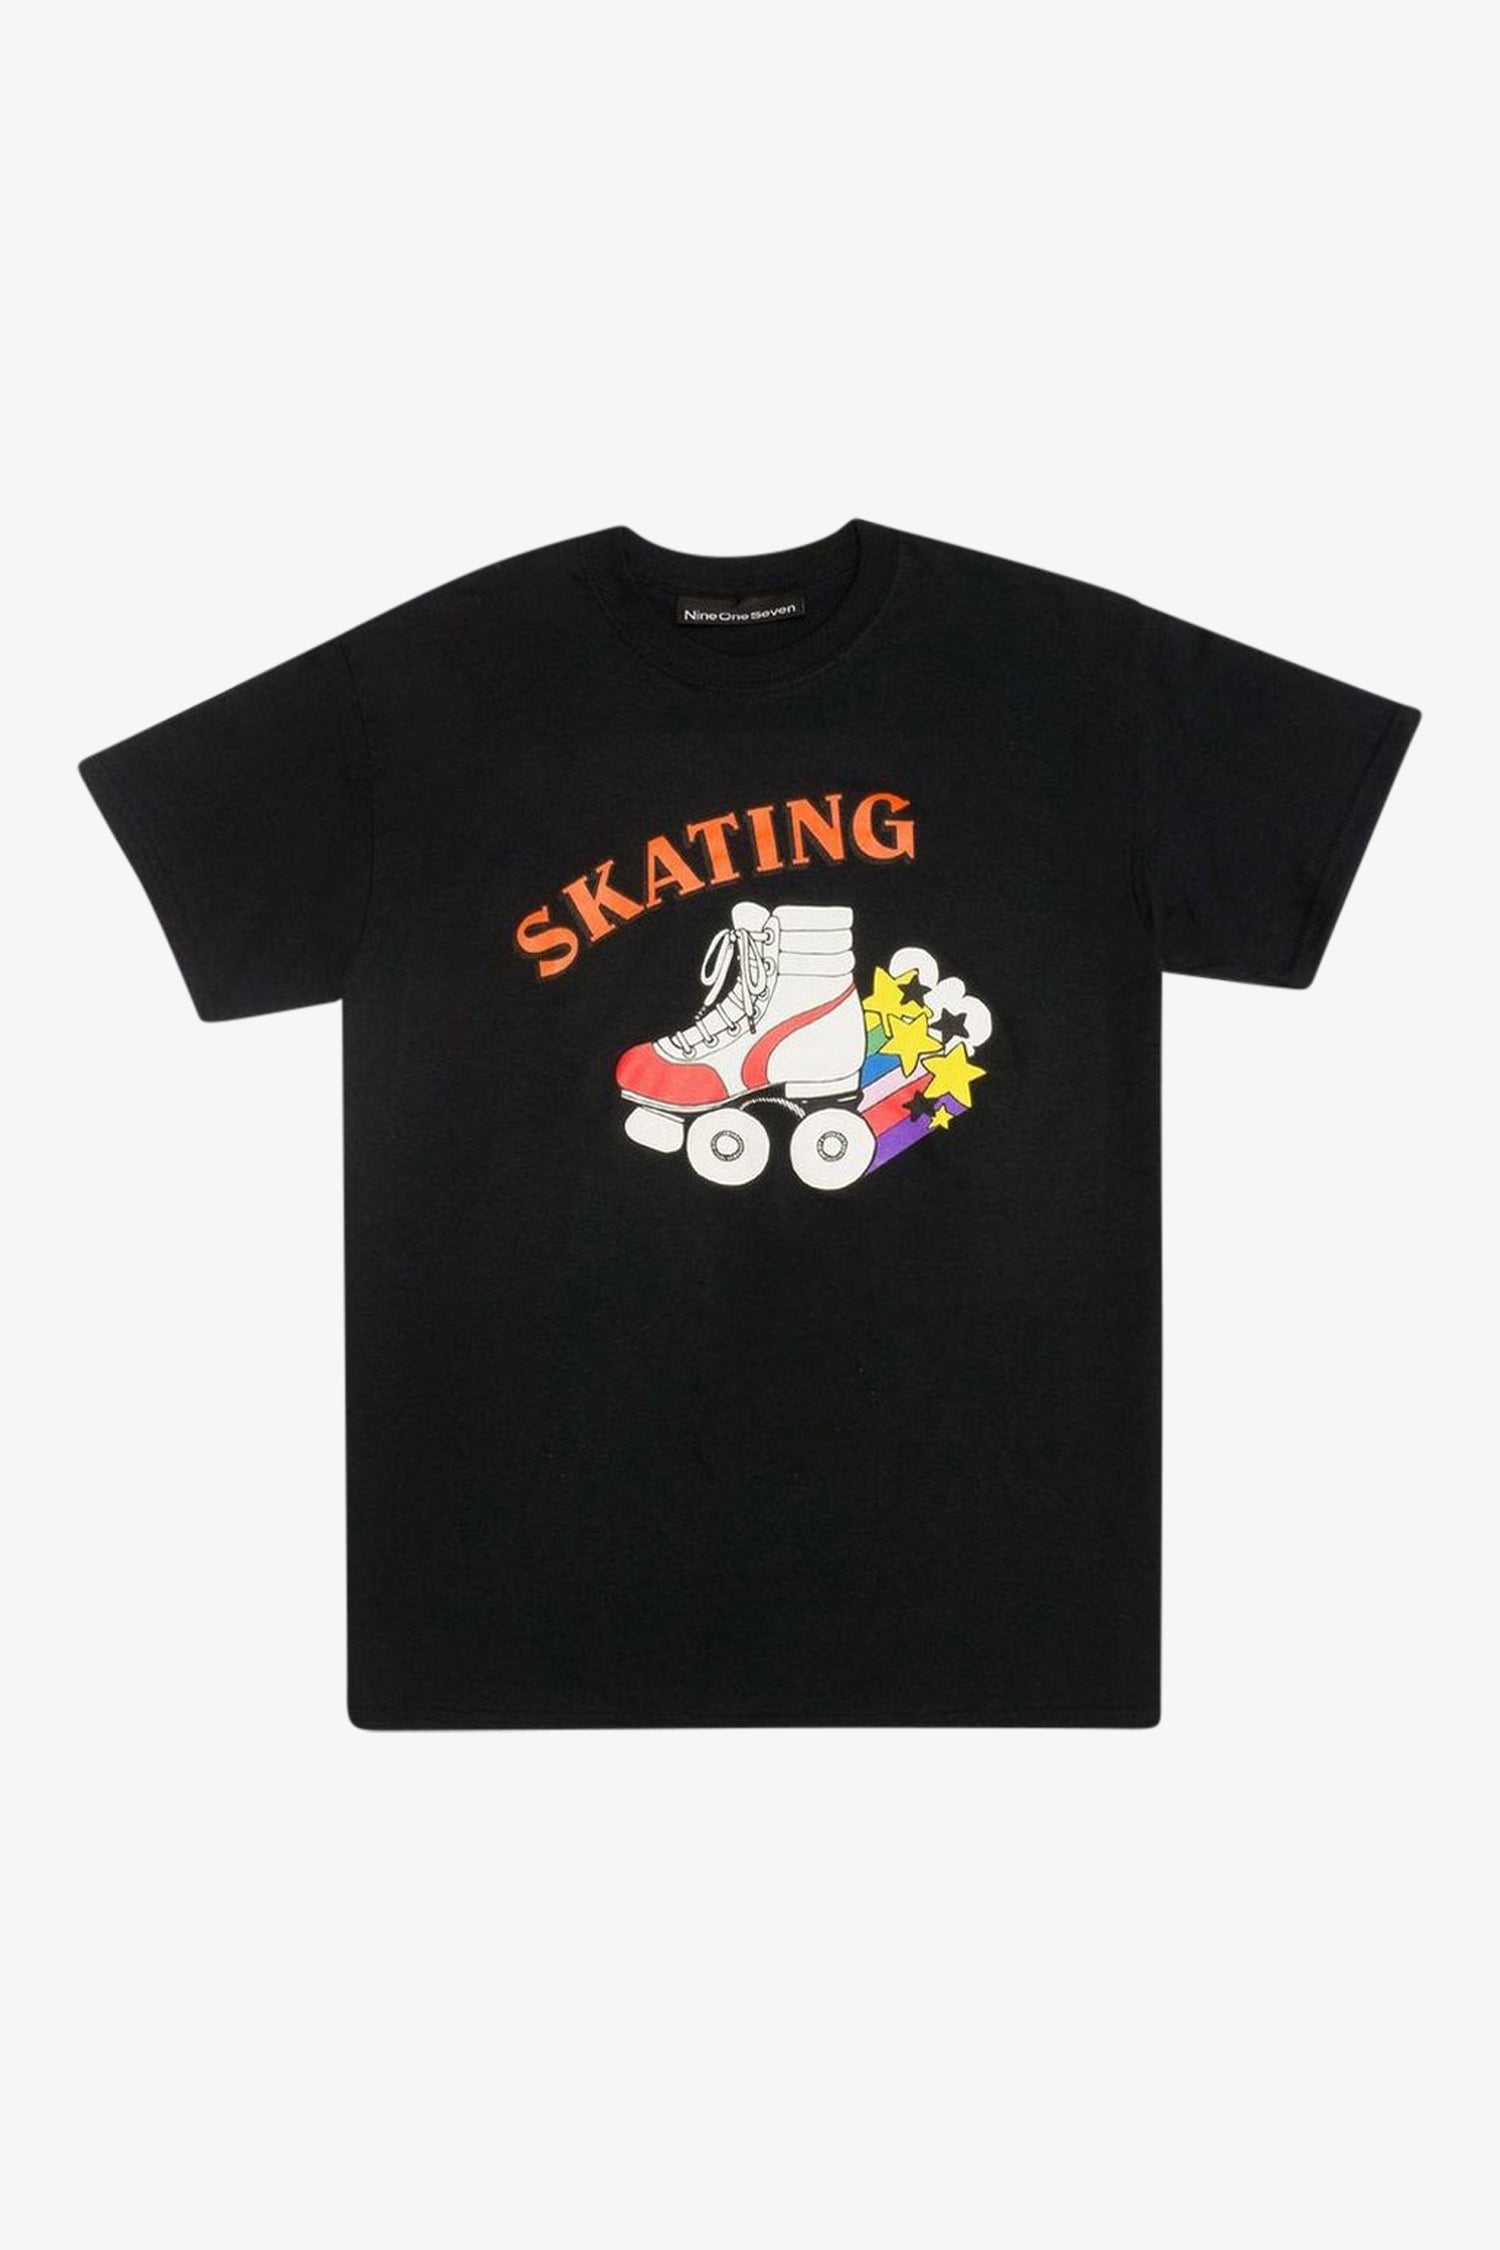 Selectshop FRAME - CALL ME 917 Skate Or Die Tee T-Shirt Dubai